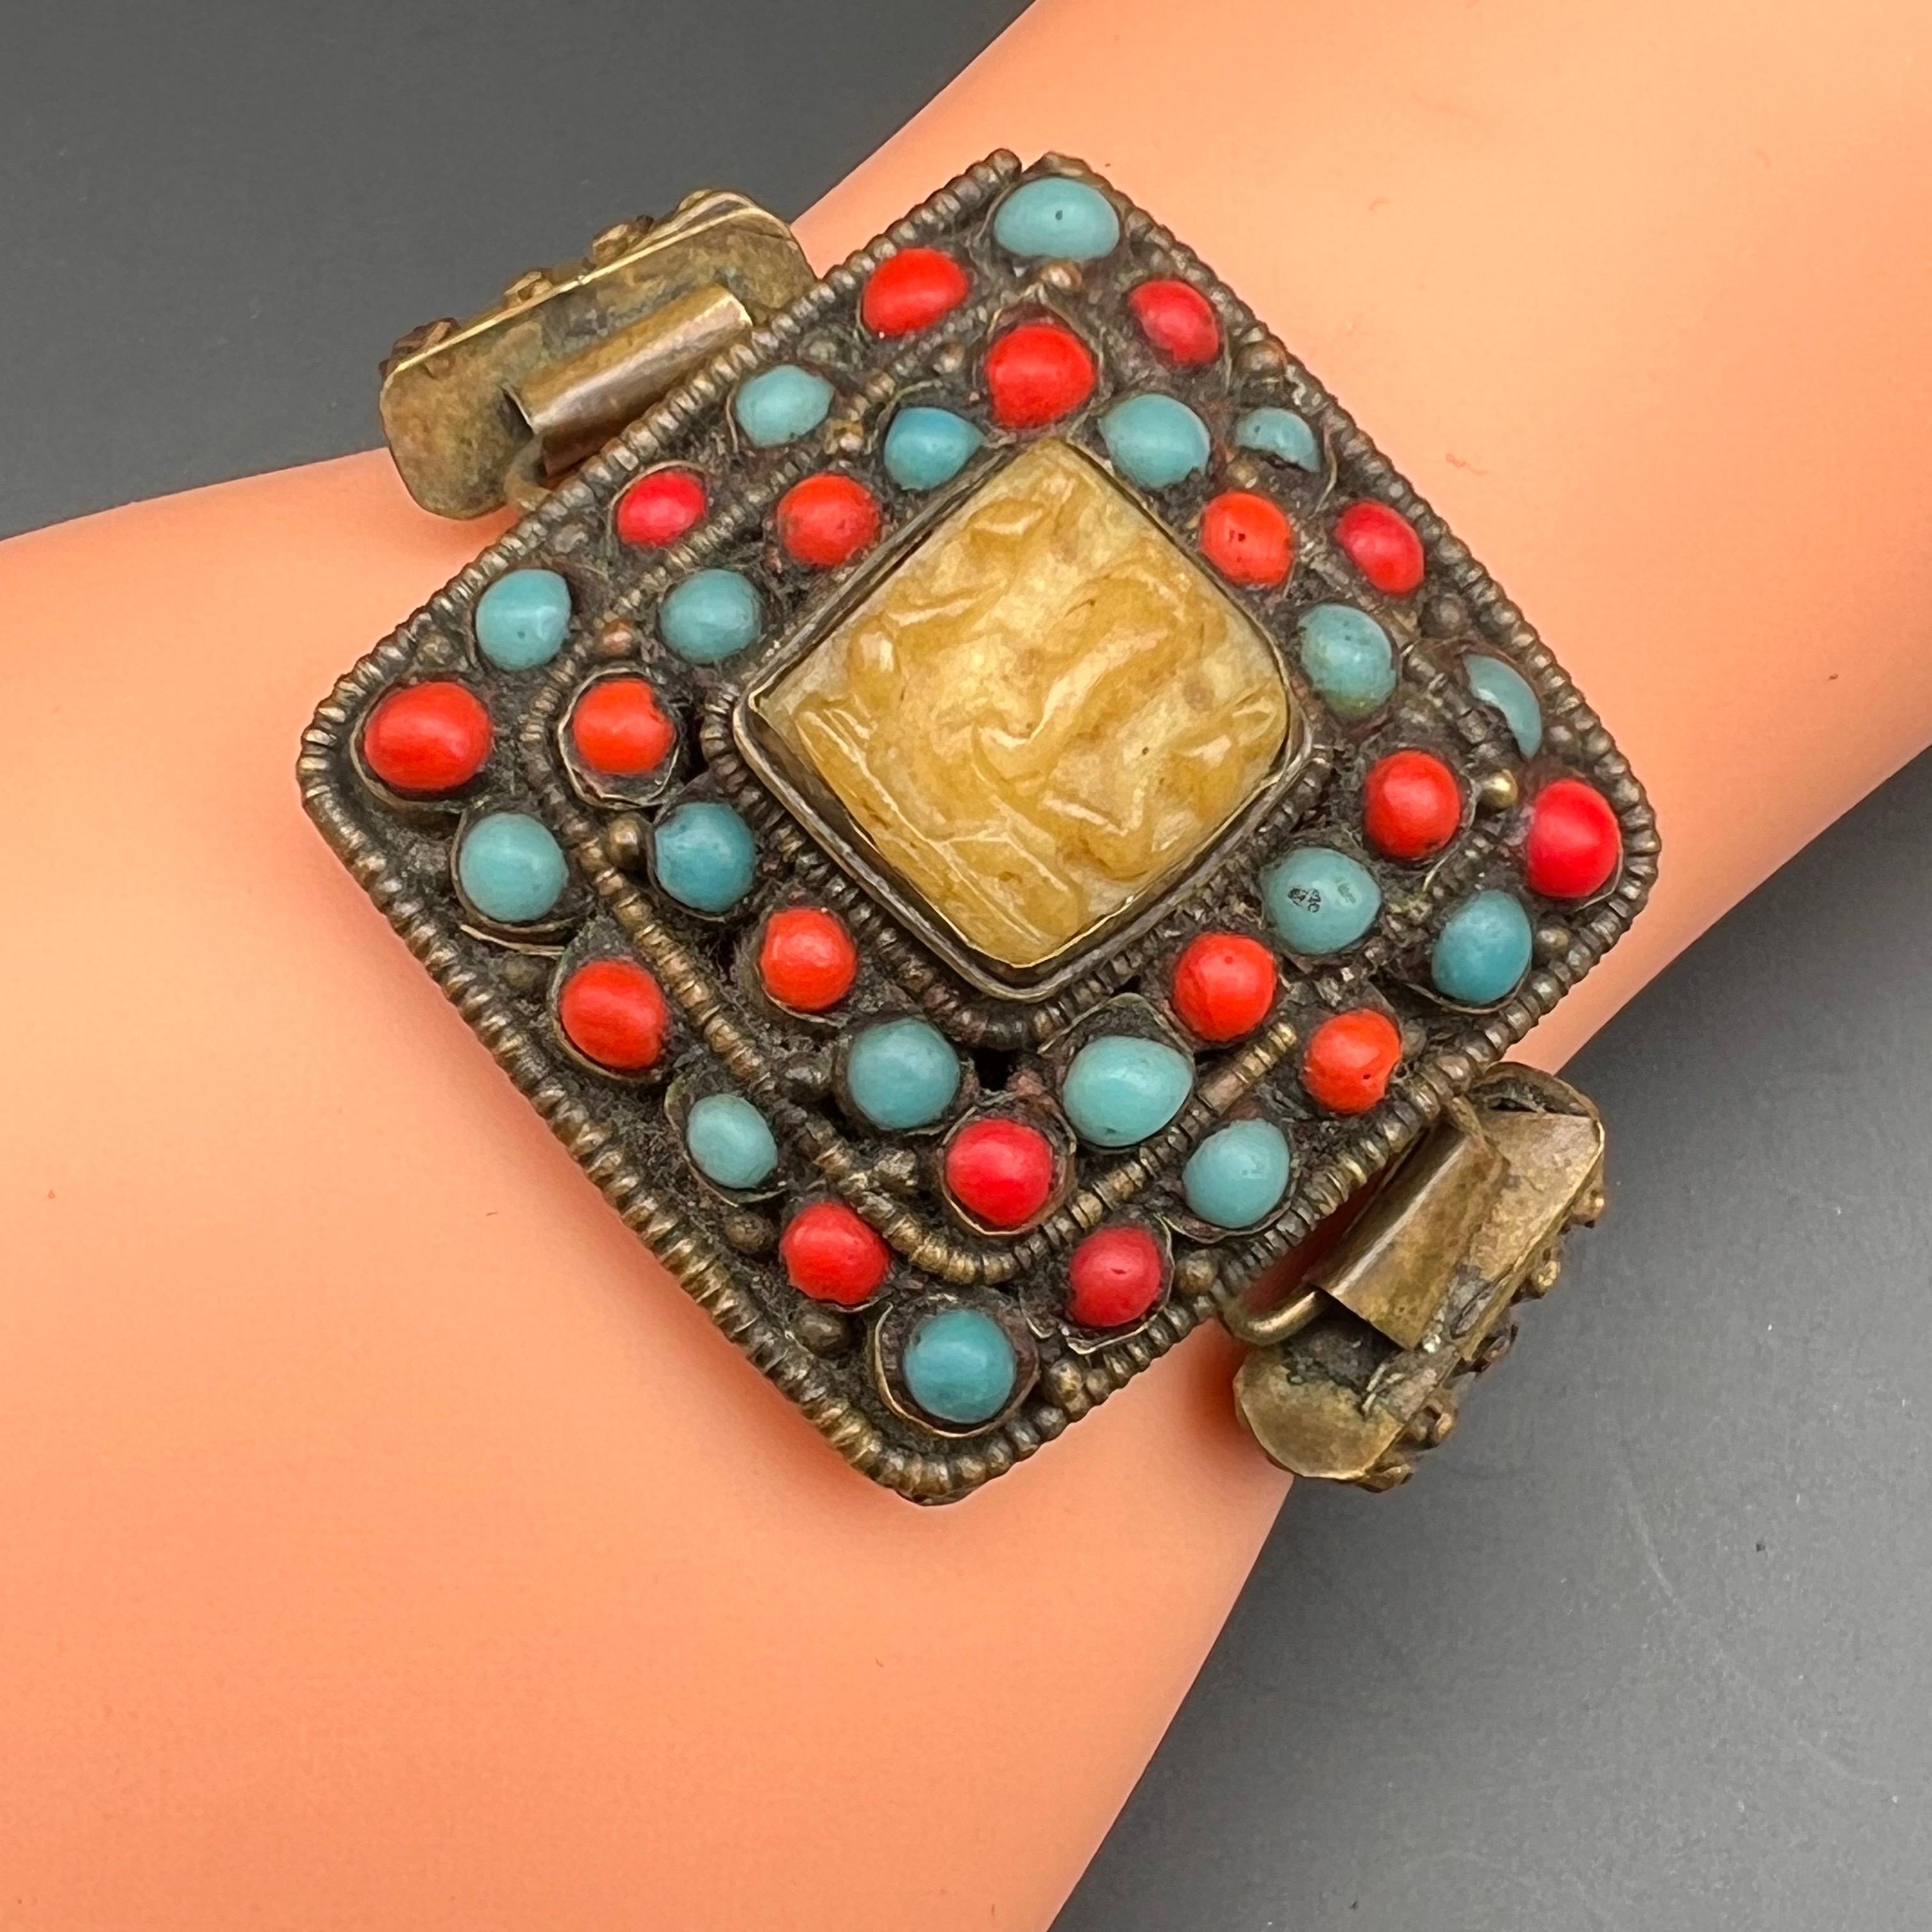 Handmade Tibet Bracelet with Carved Ganesha For Sale 5